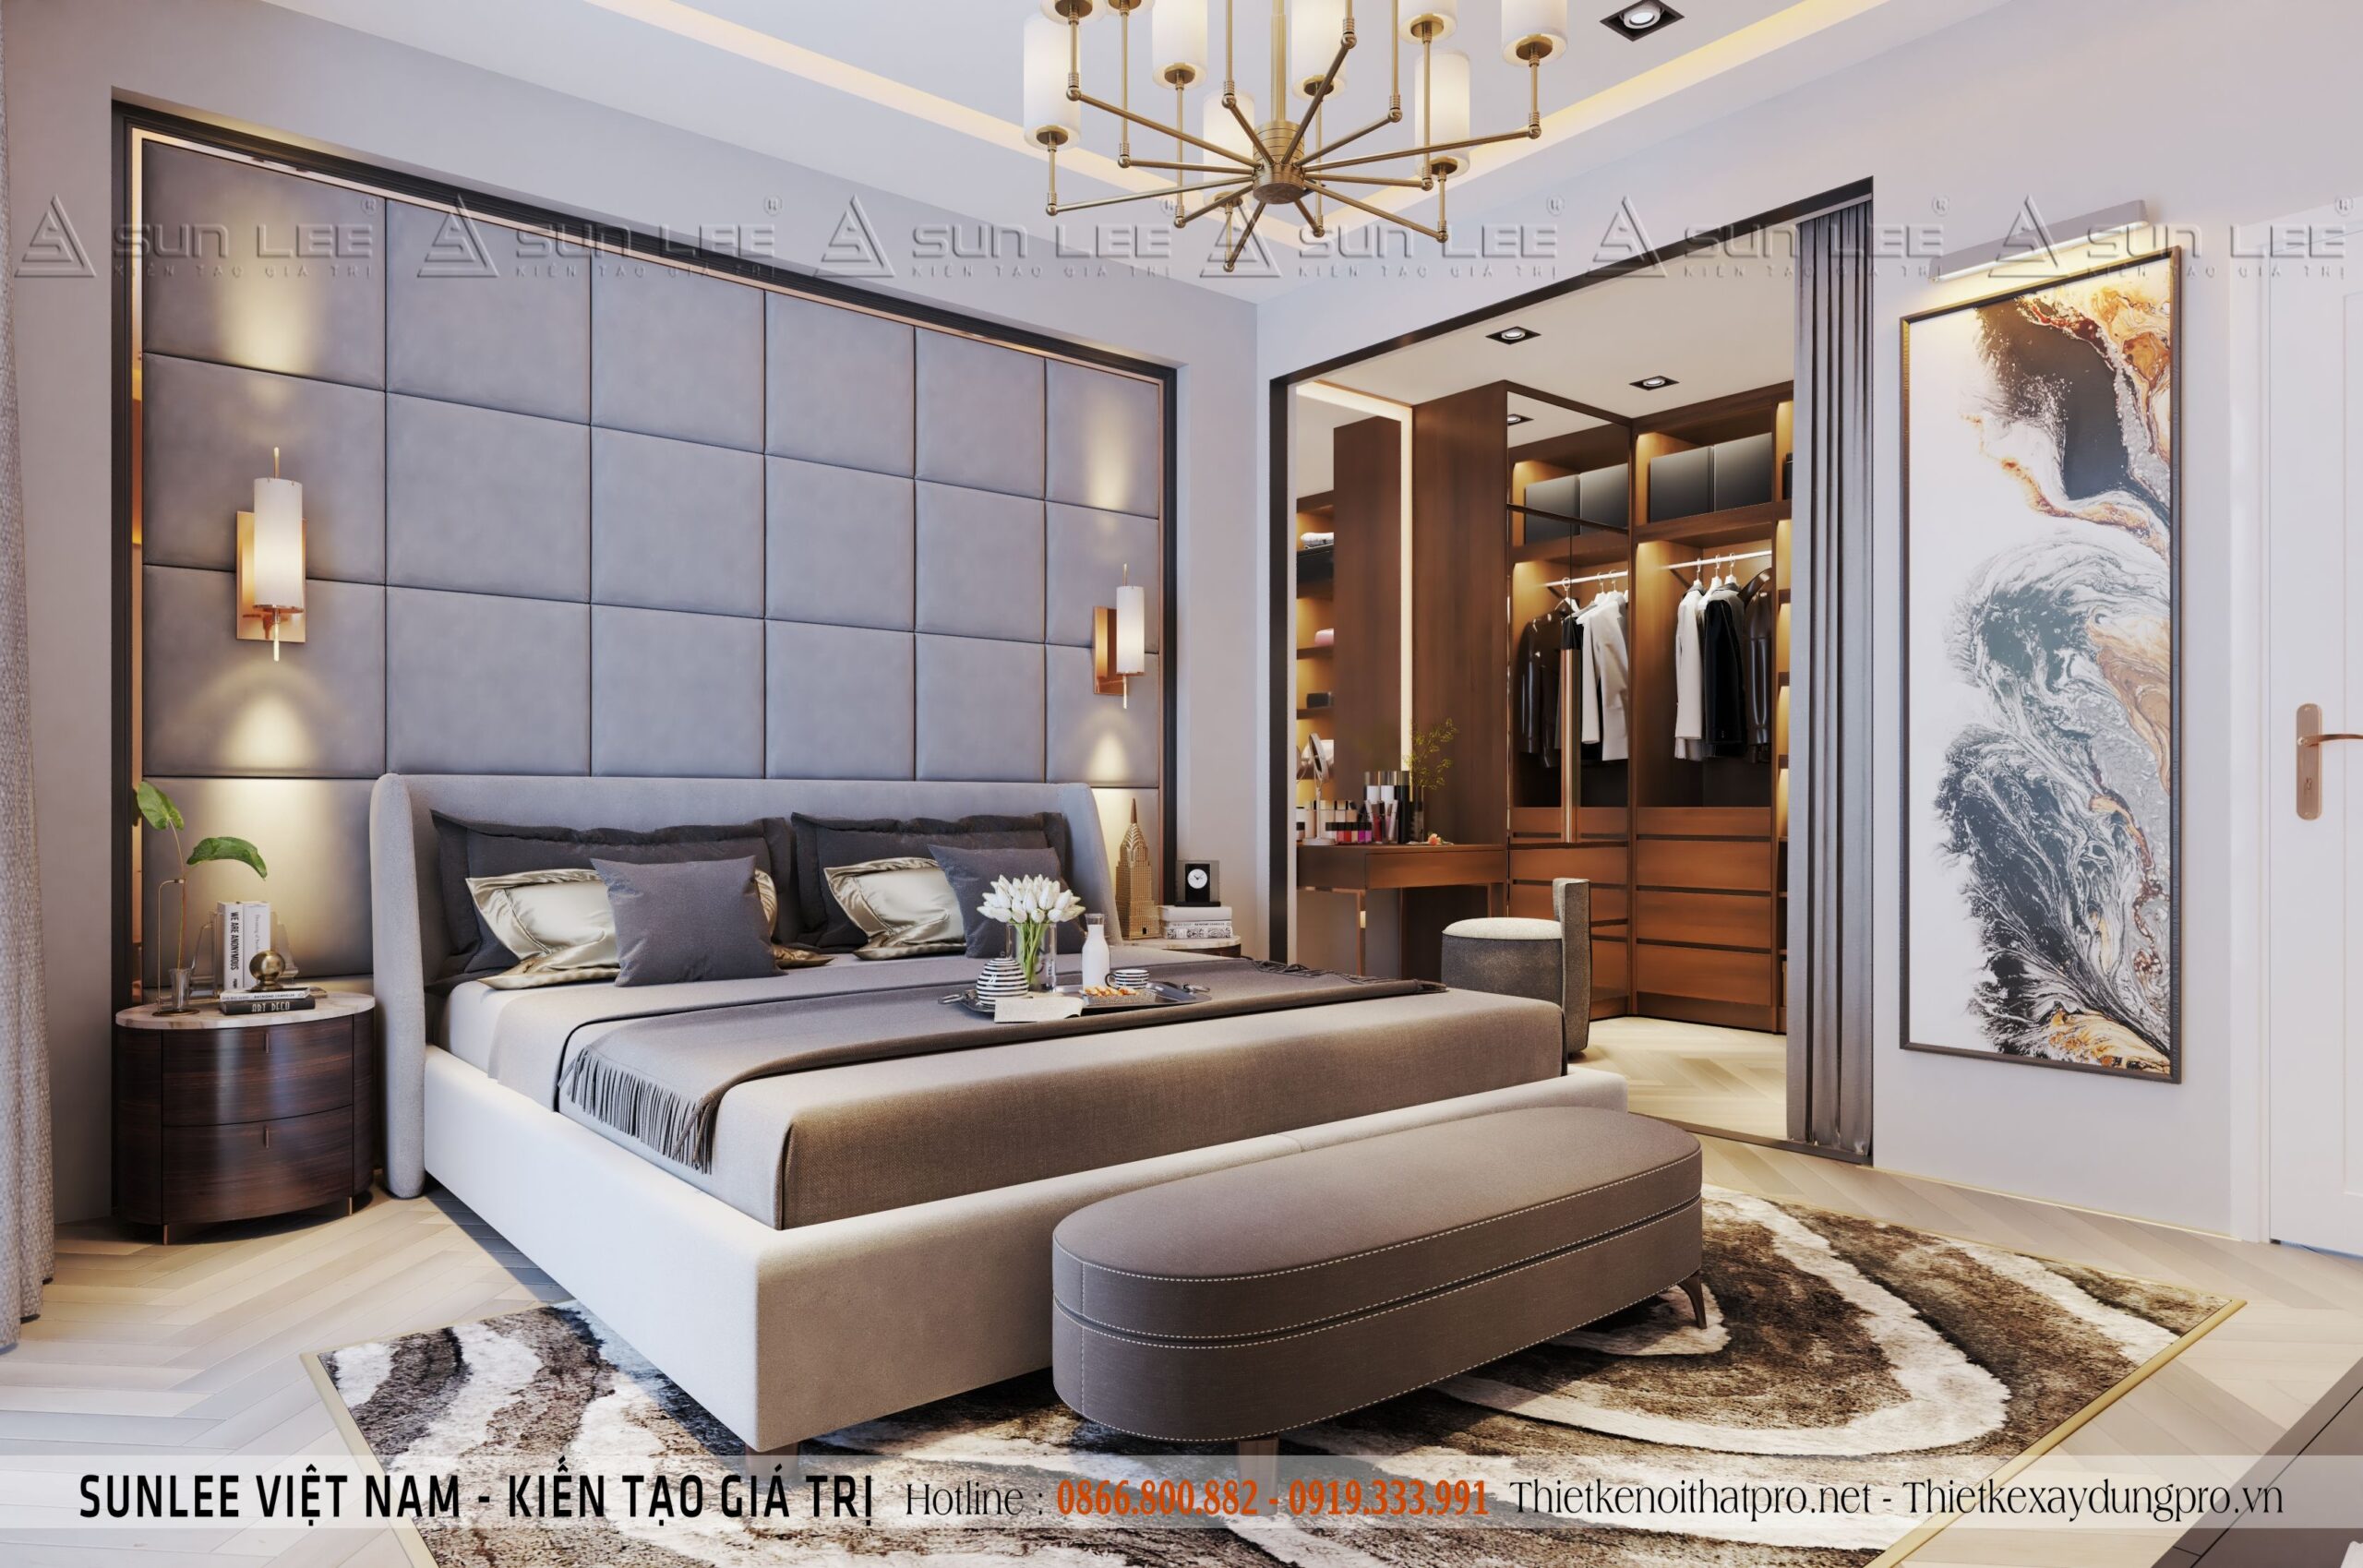 Thiết kế nội thất biệt thự cao cấp tại Hà Nội